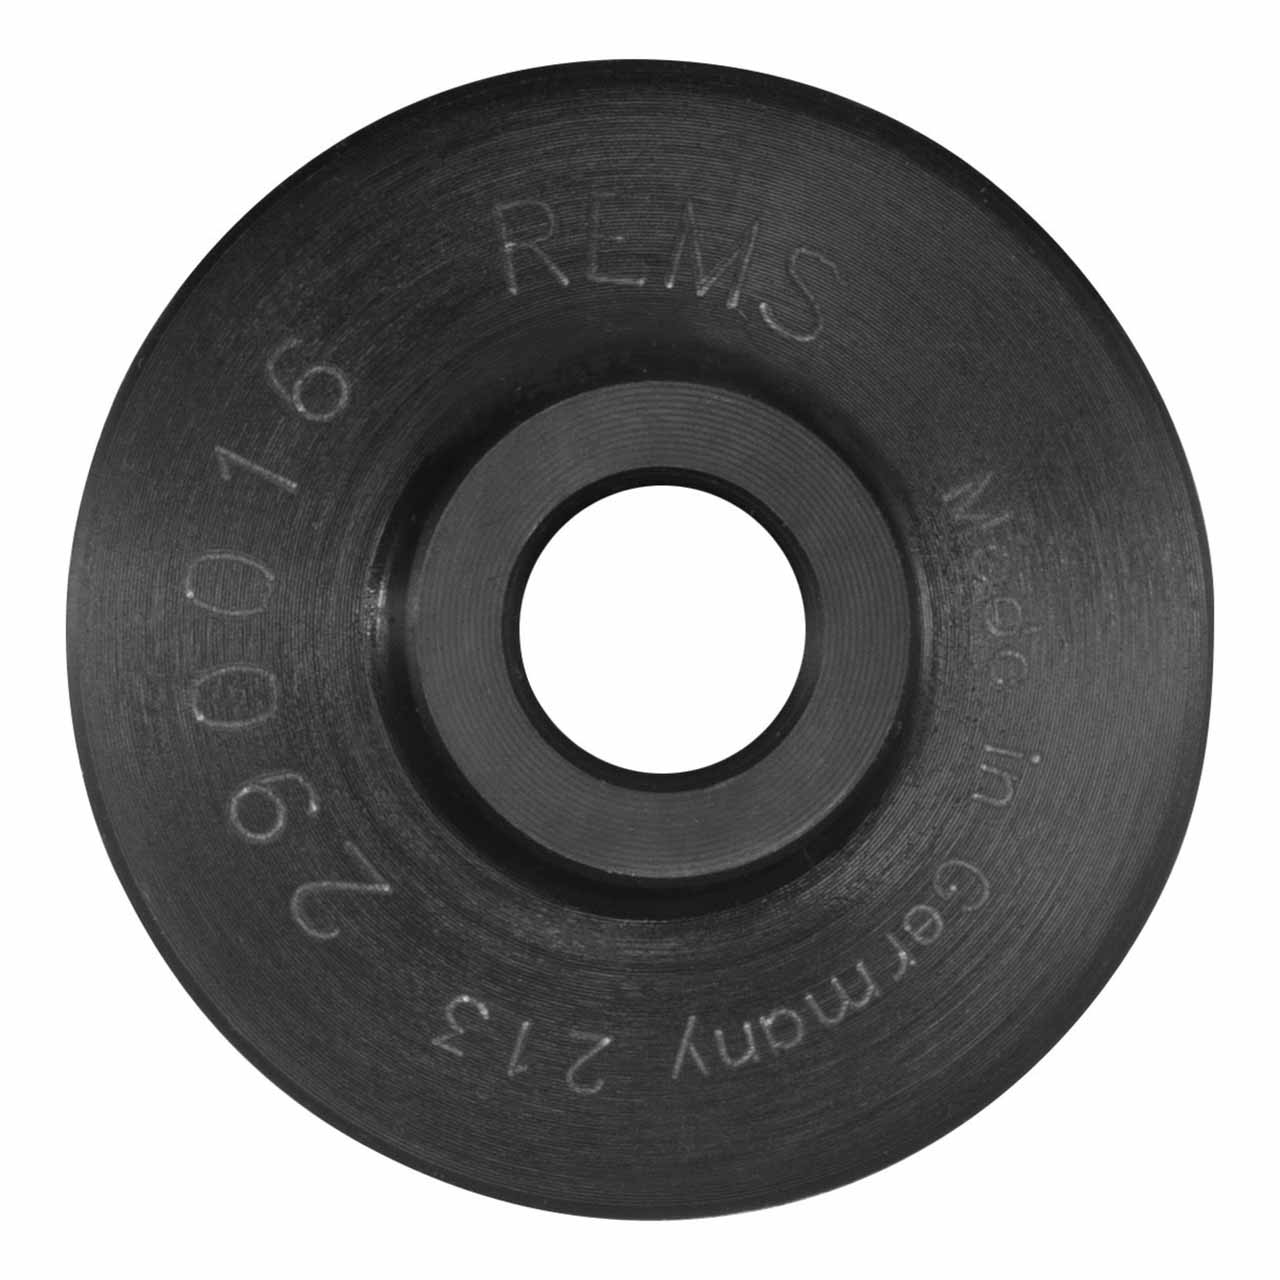 REMS Cutter Wheel - P 10mm-63mm, s 7